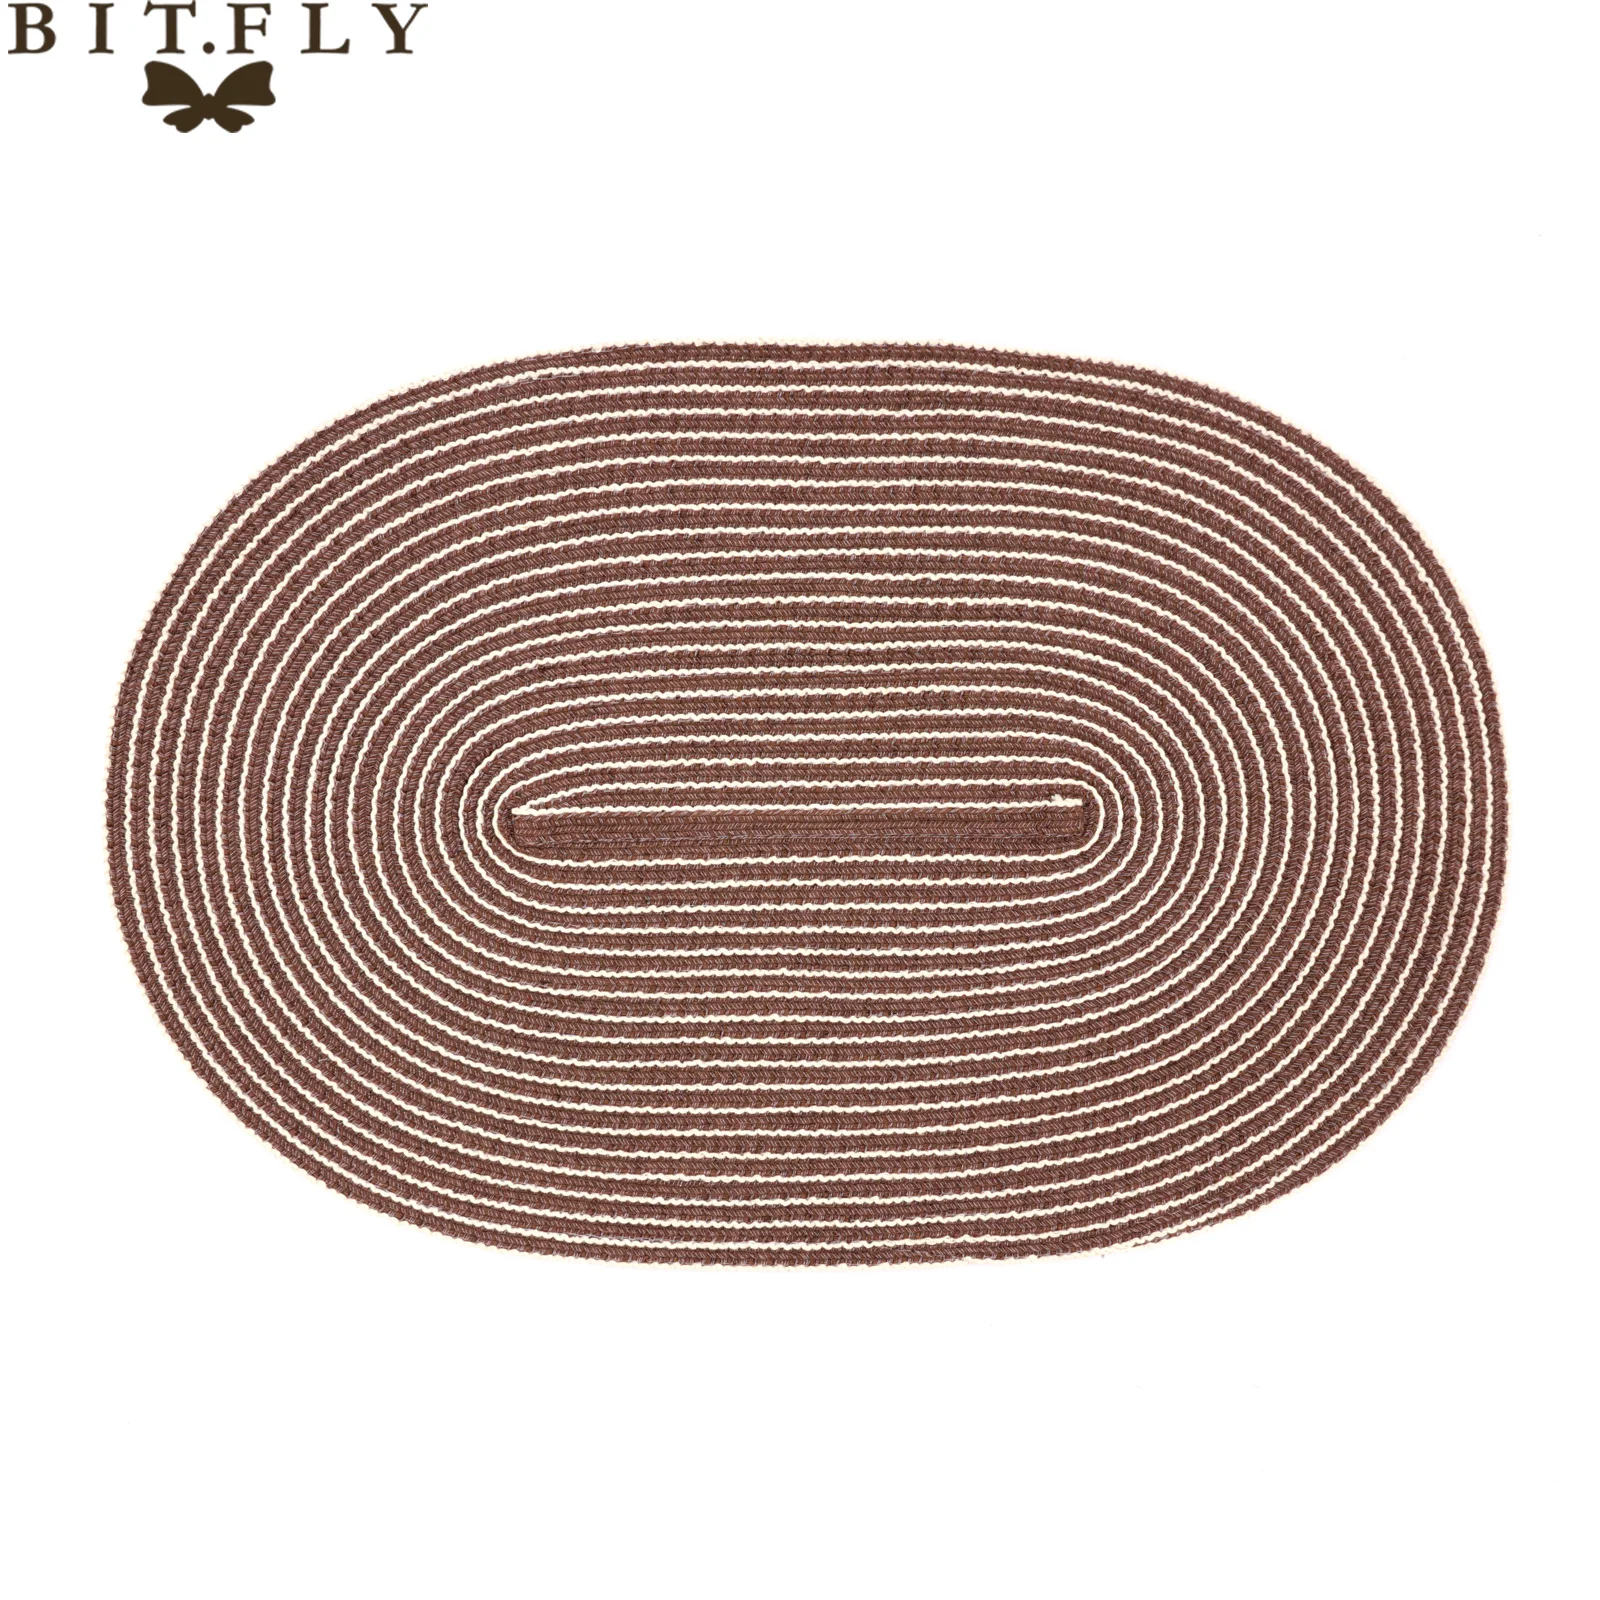 4 шт сплошной цвет Овальный тканый коврик для стола Ding коврик термостойкая Чаша Coaster кофе для кухни дома свадьбы партии питания